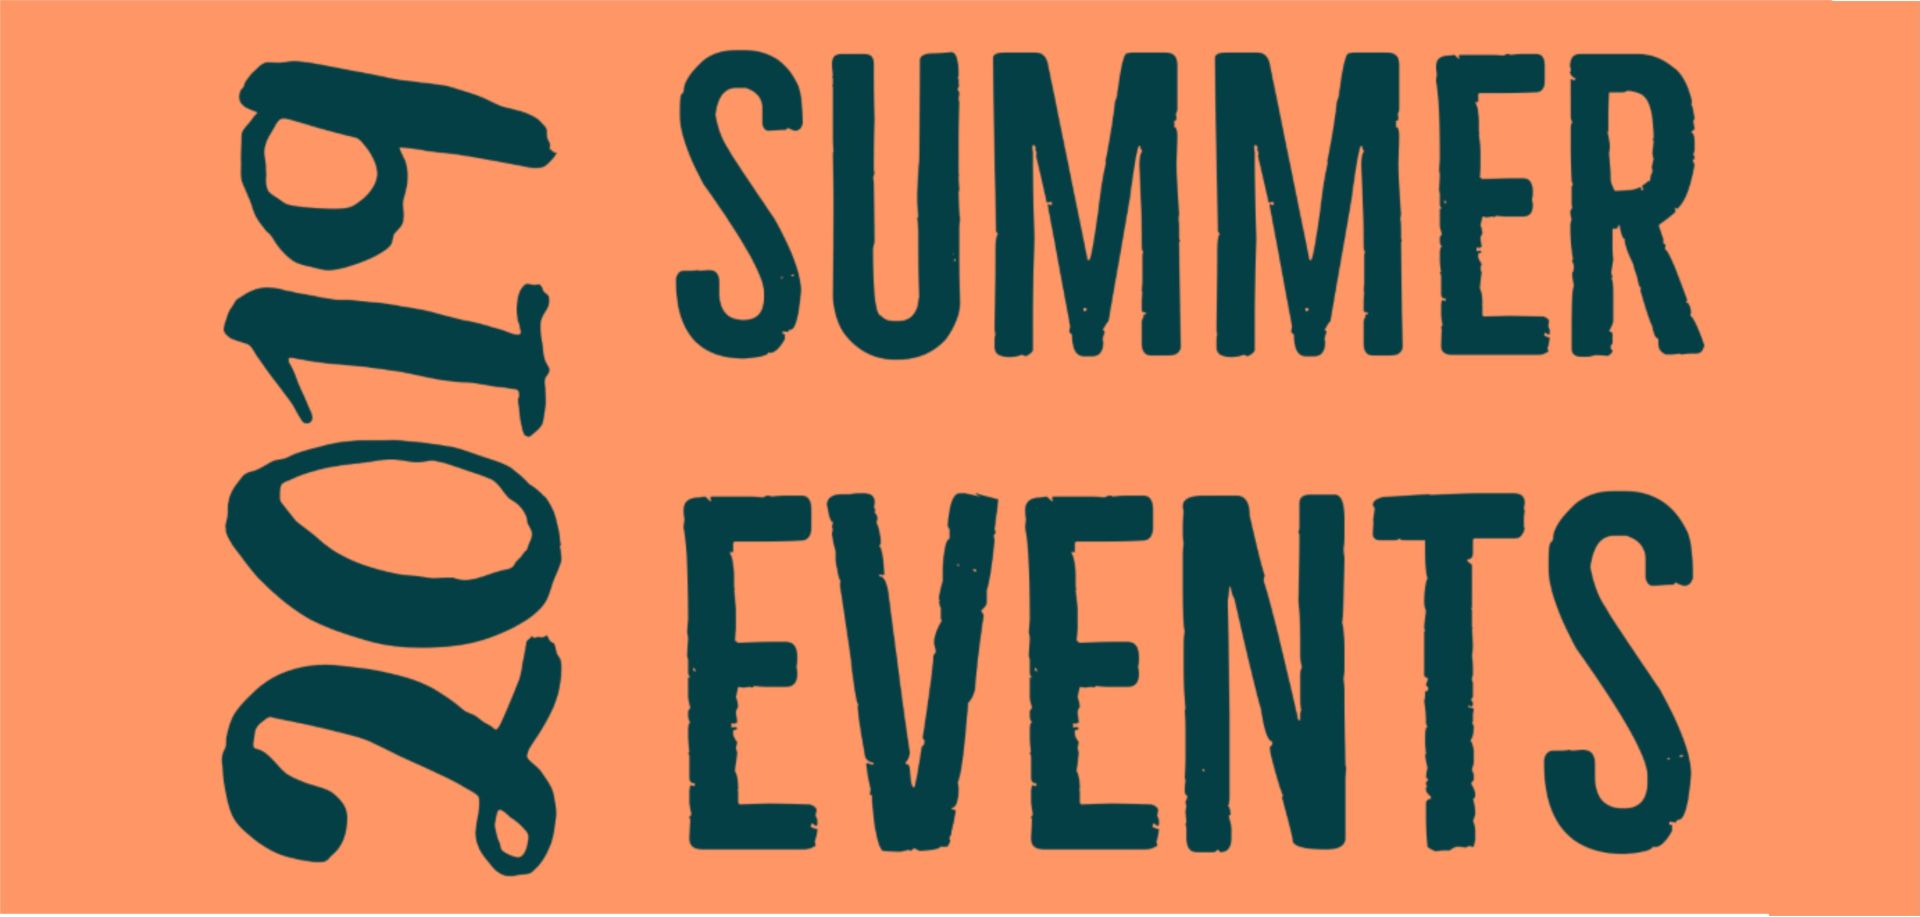 2019 Summer Events Calendar